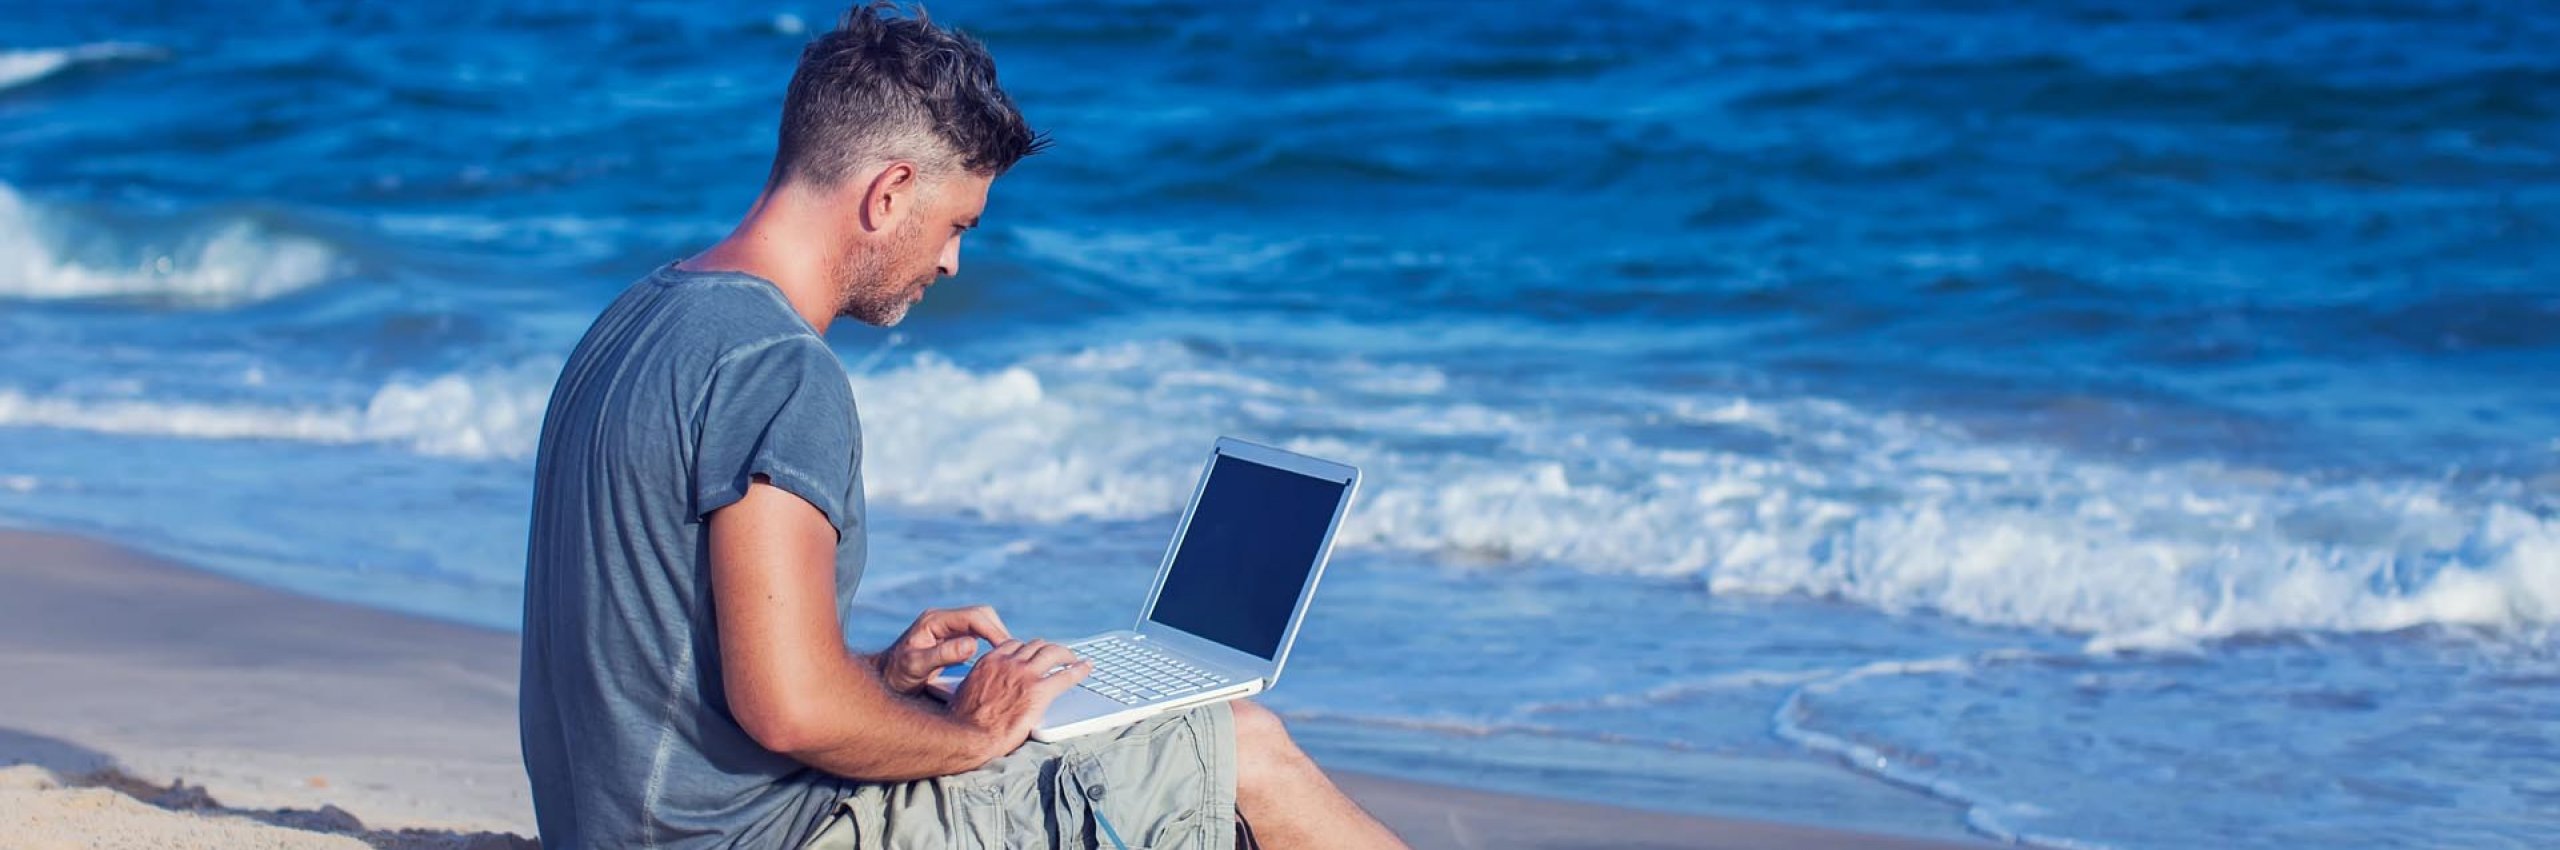 BRW | Zielgruppenseiten Firmenkunden | Mann arbeitet mit dem Laptop am Strand 